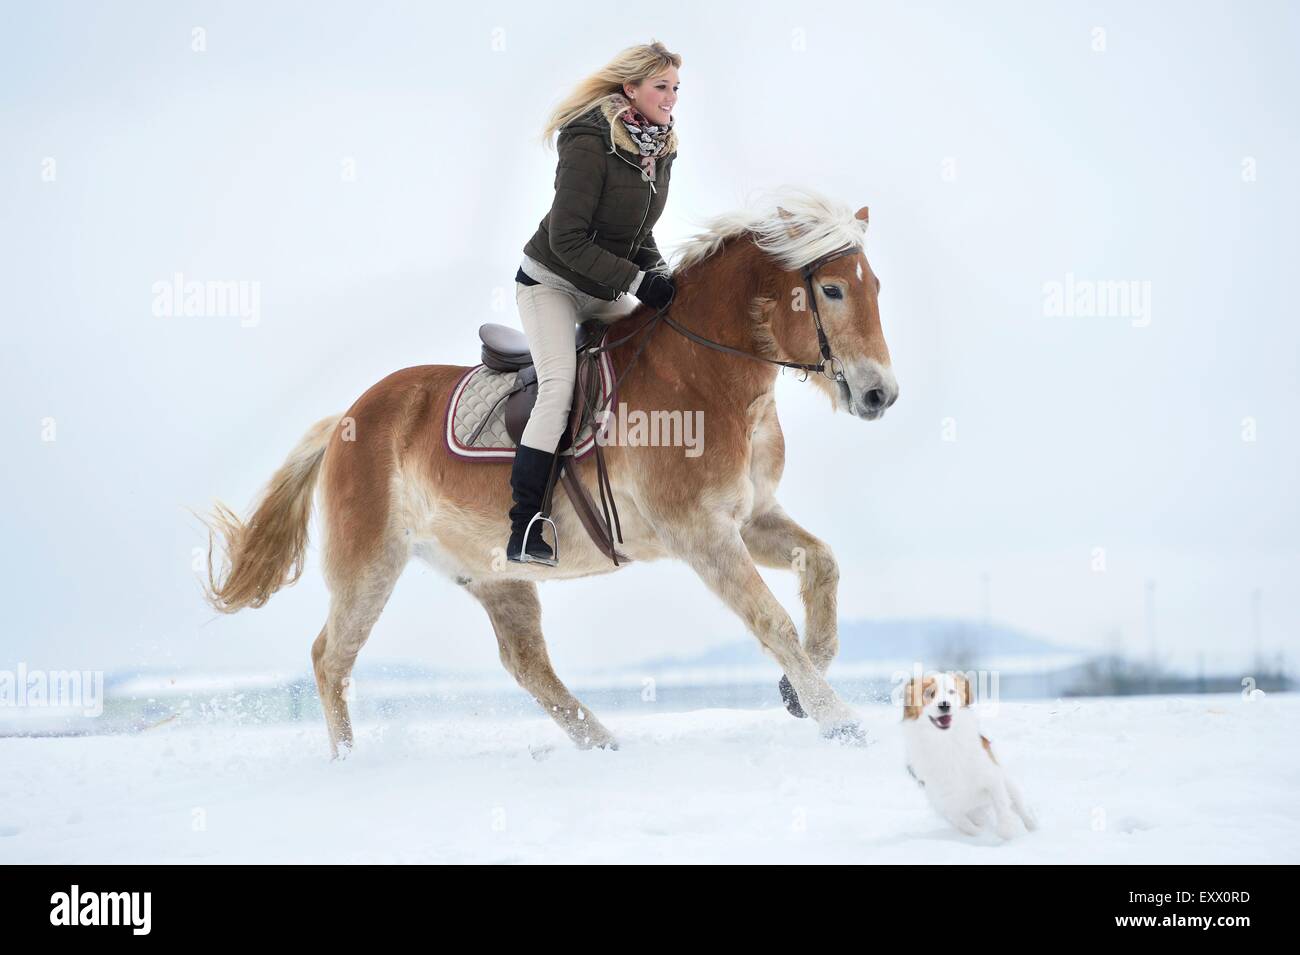 Jeune femme équitation cheval Haflinger dans la neige Banque D'Images